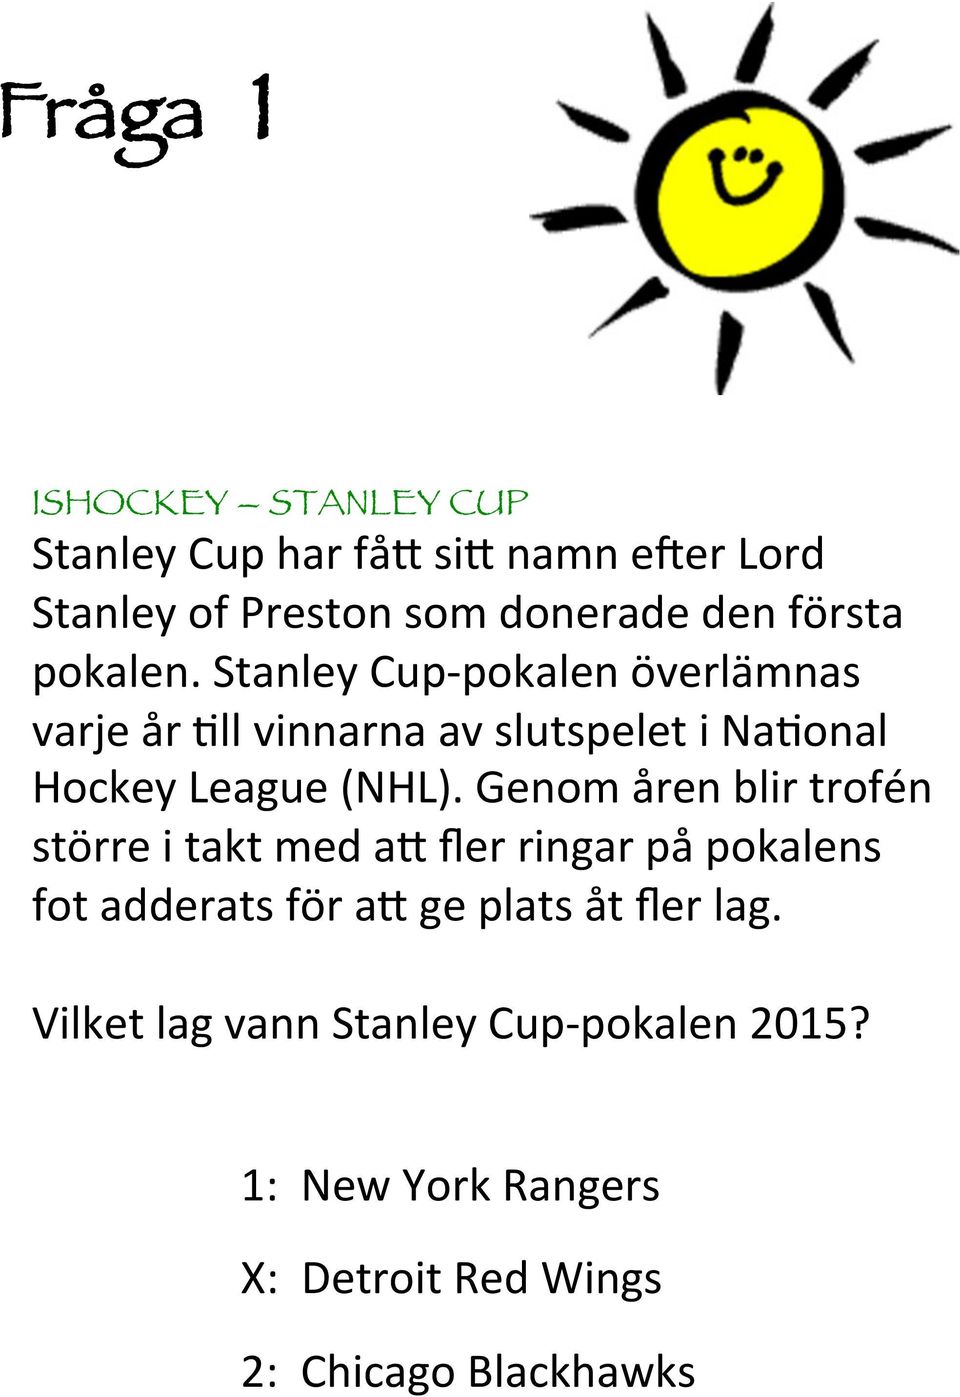 Stanley Cup- pokalen överlämnas varje år @ll vinnarna av slutspelet i Na@onal Hockey League (NHL).